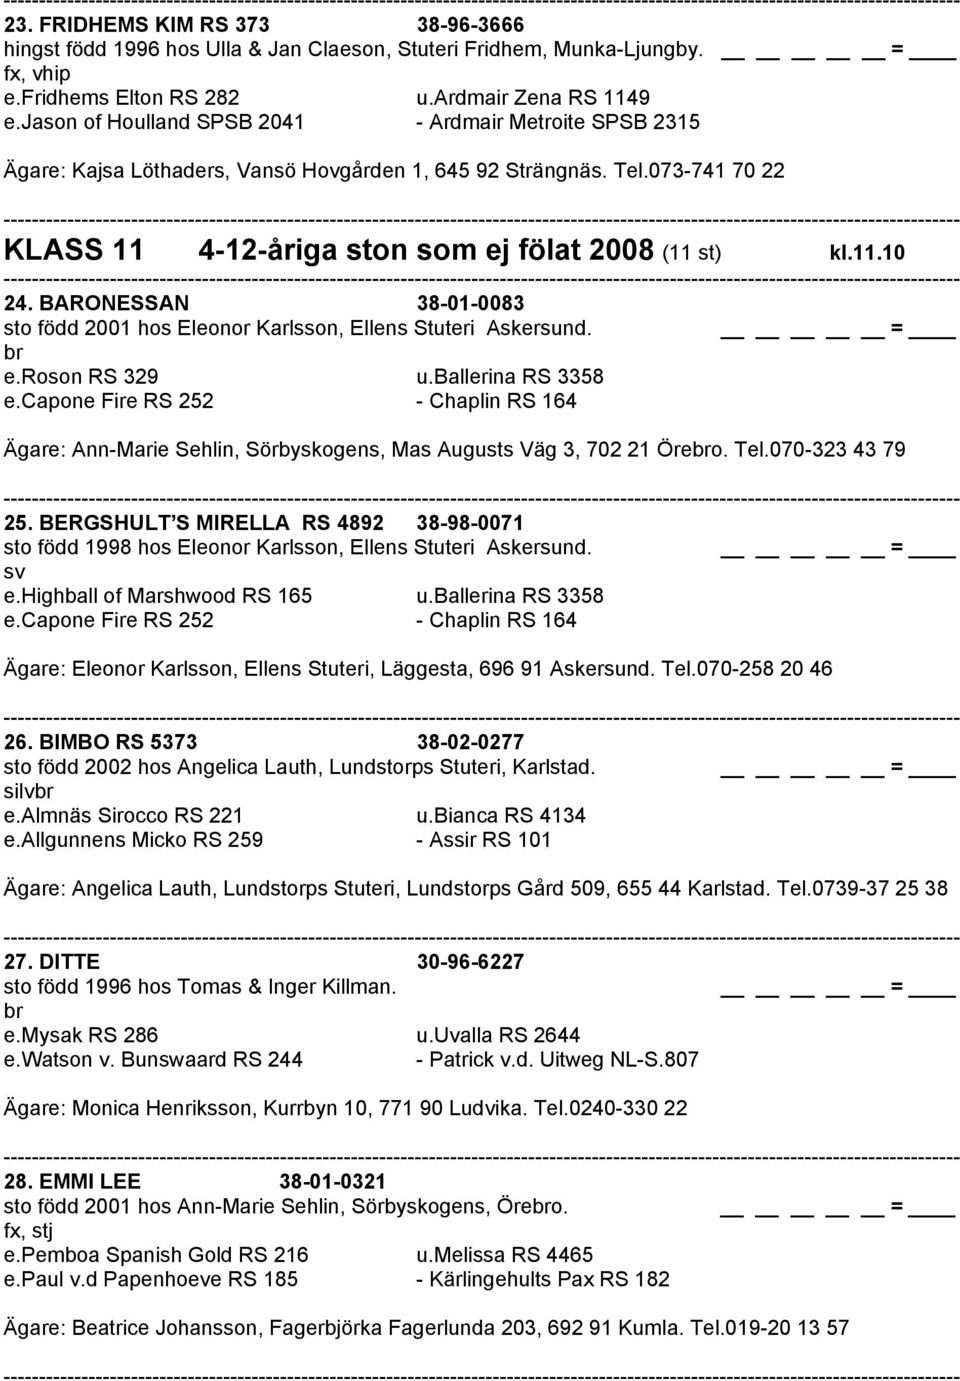 BARONESSAN 38-01-0083 sto född 2001 hos Eleonor Karlsson, Ellens Stuteri Askersund. br e.roson RS 329 u.ballerina RS 3358 e.